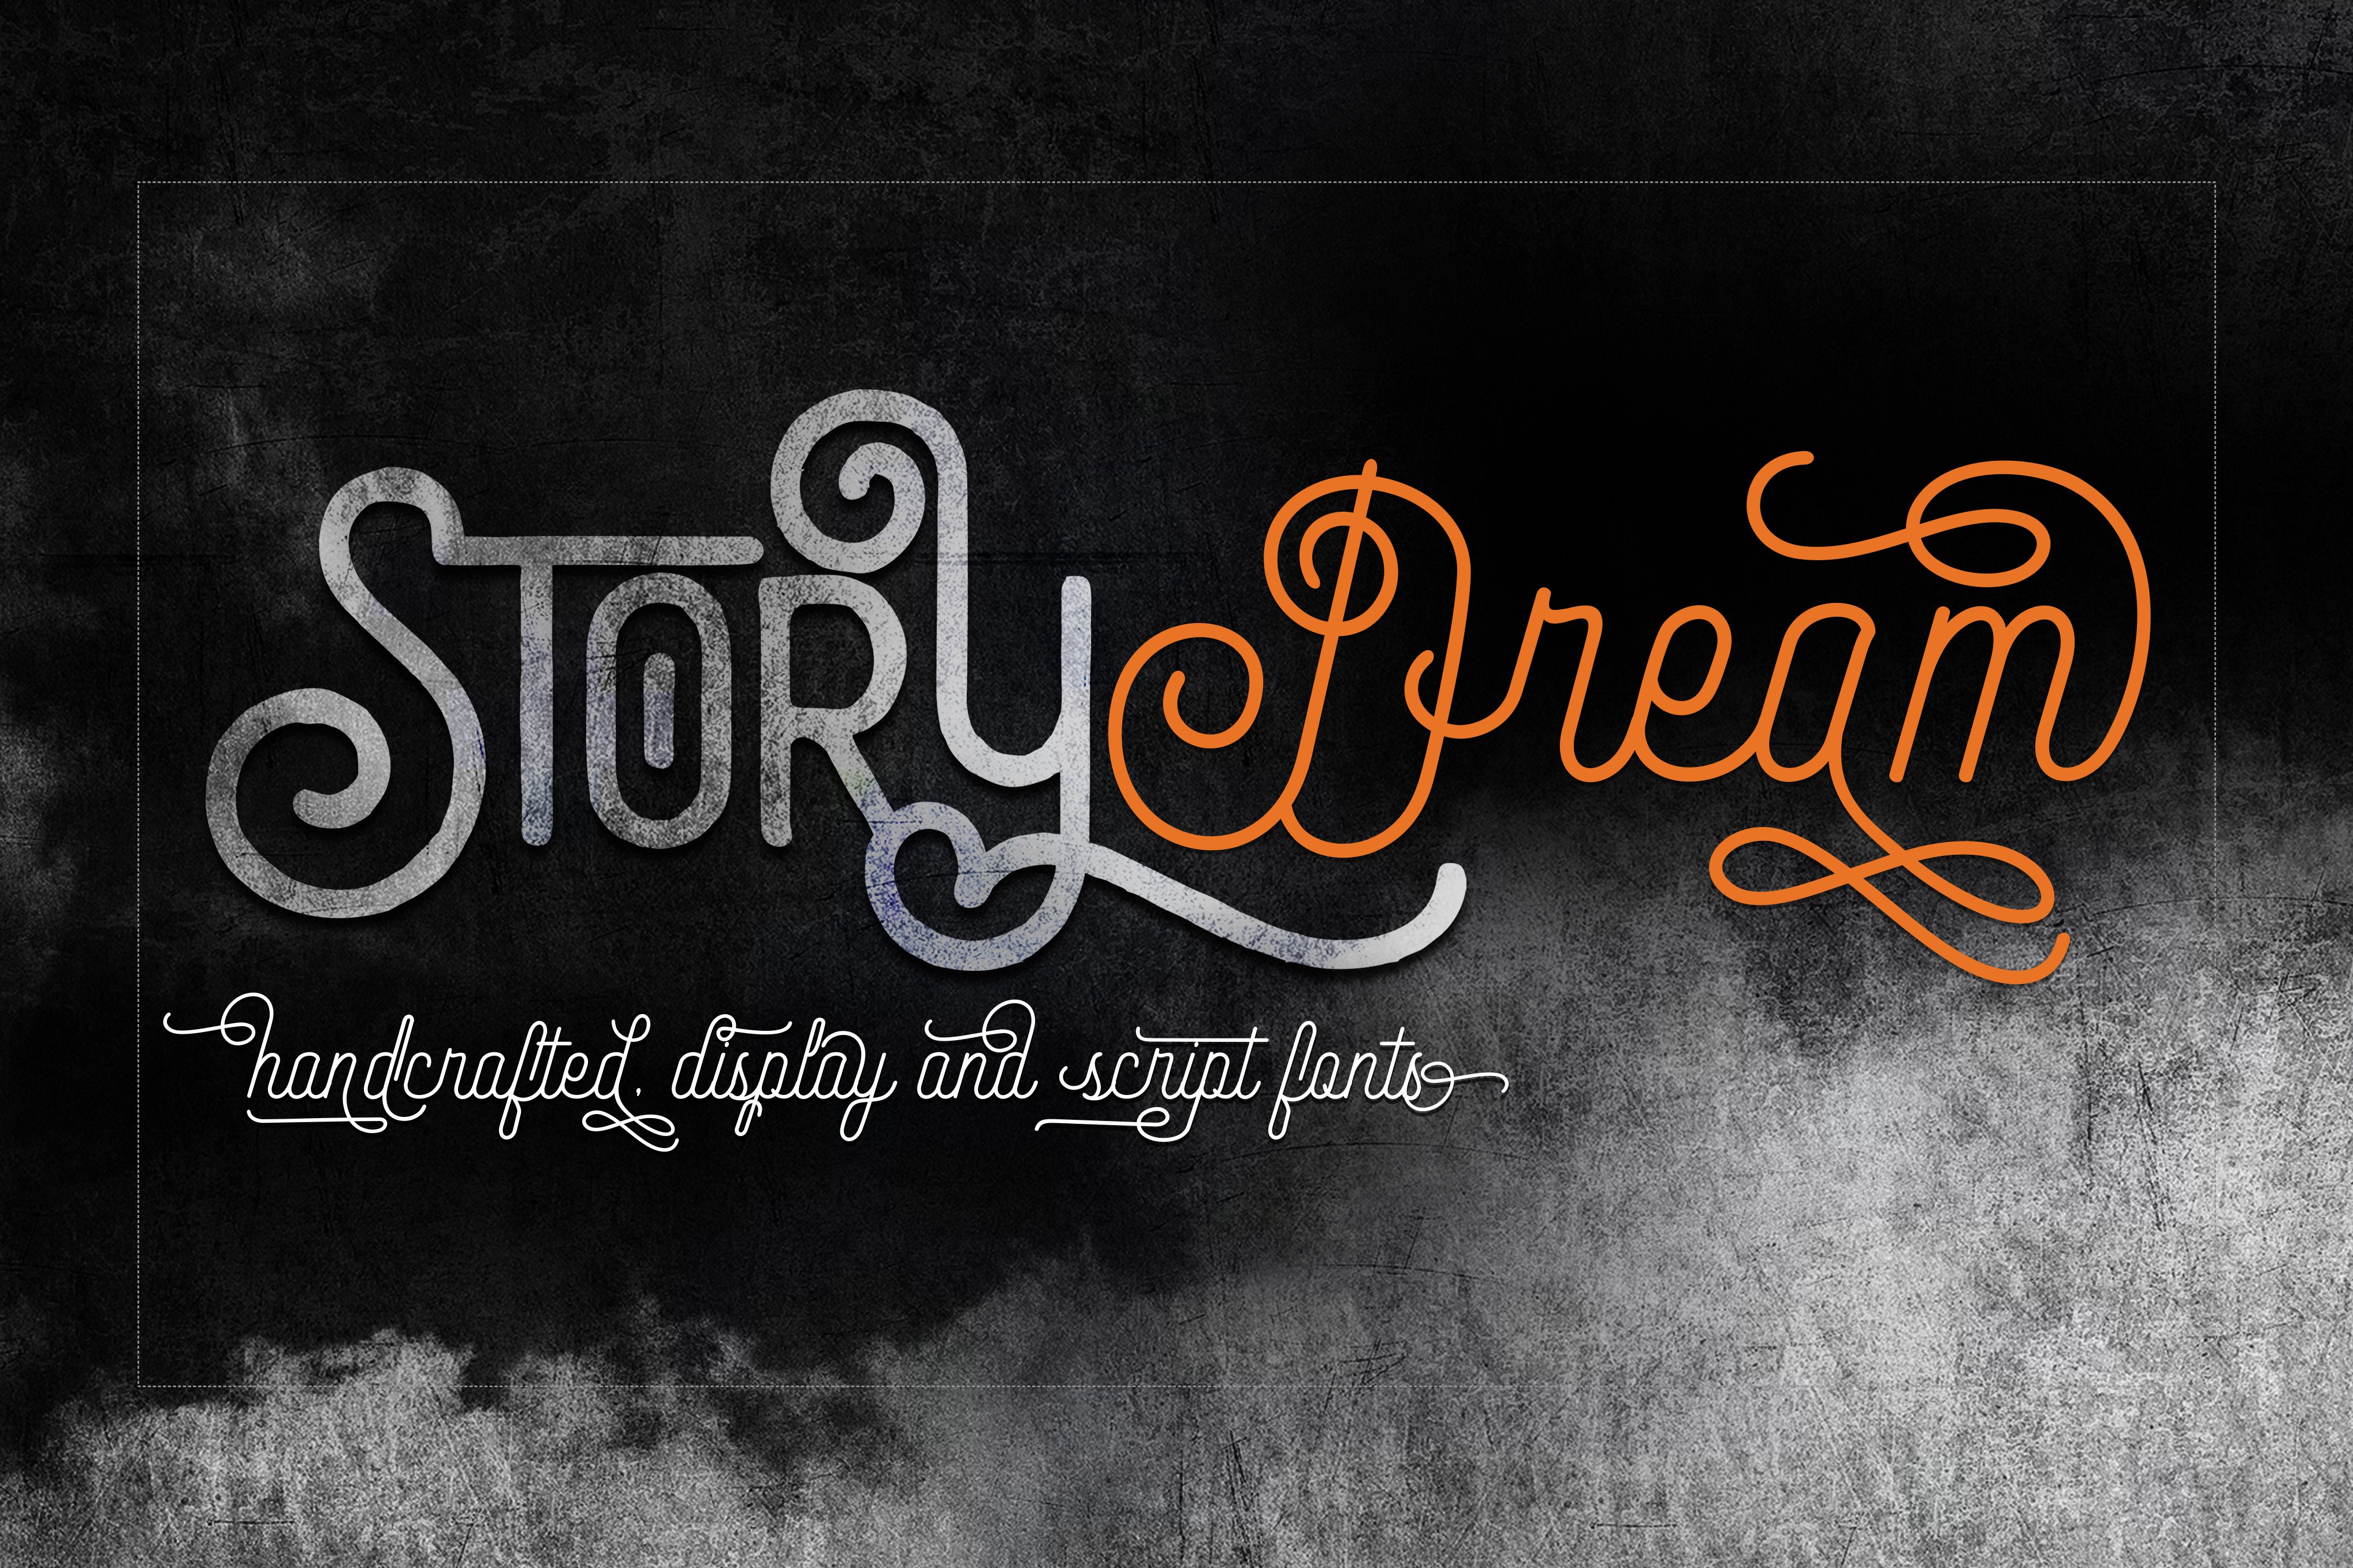 Font Story Dream